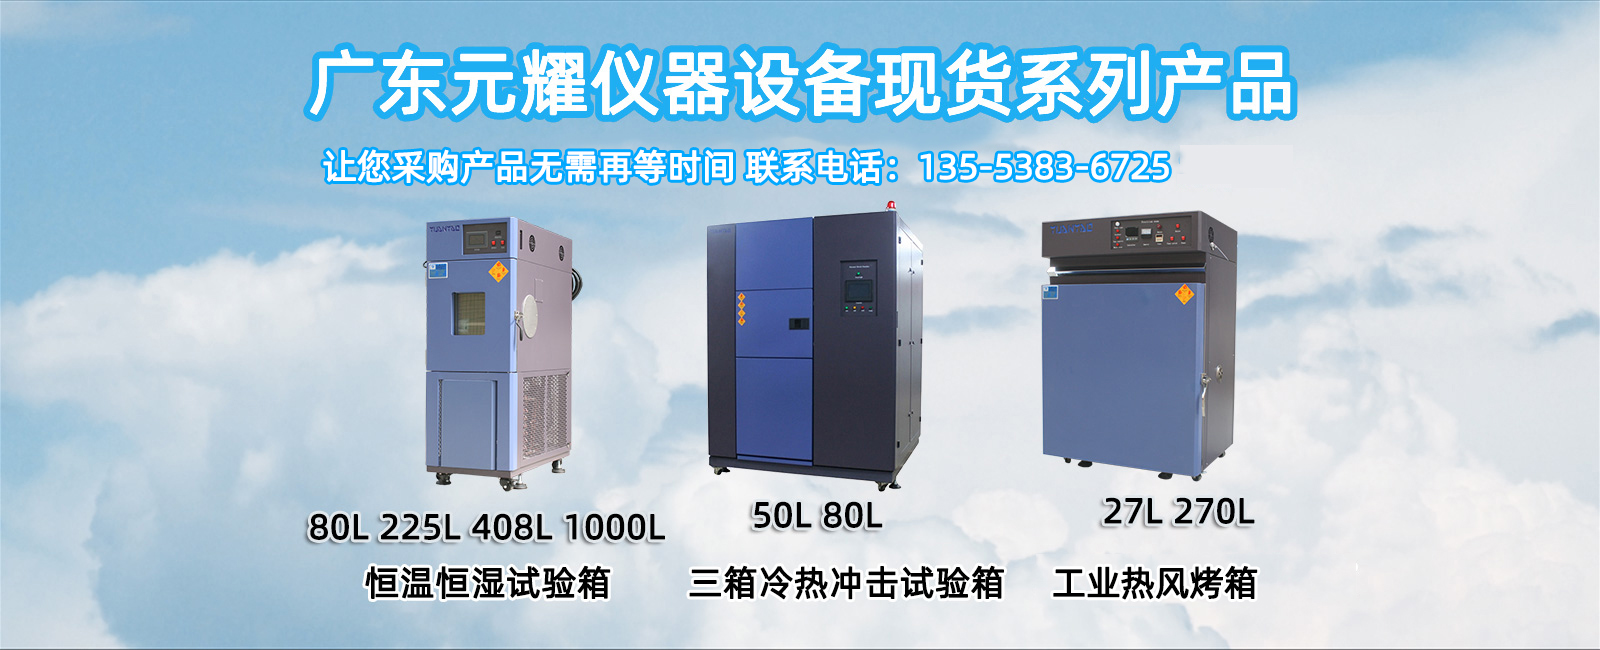 广东元耀仪器设备有限公司现货系列产品